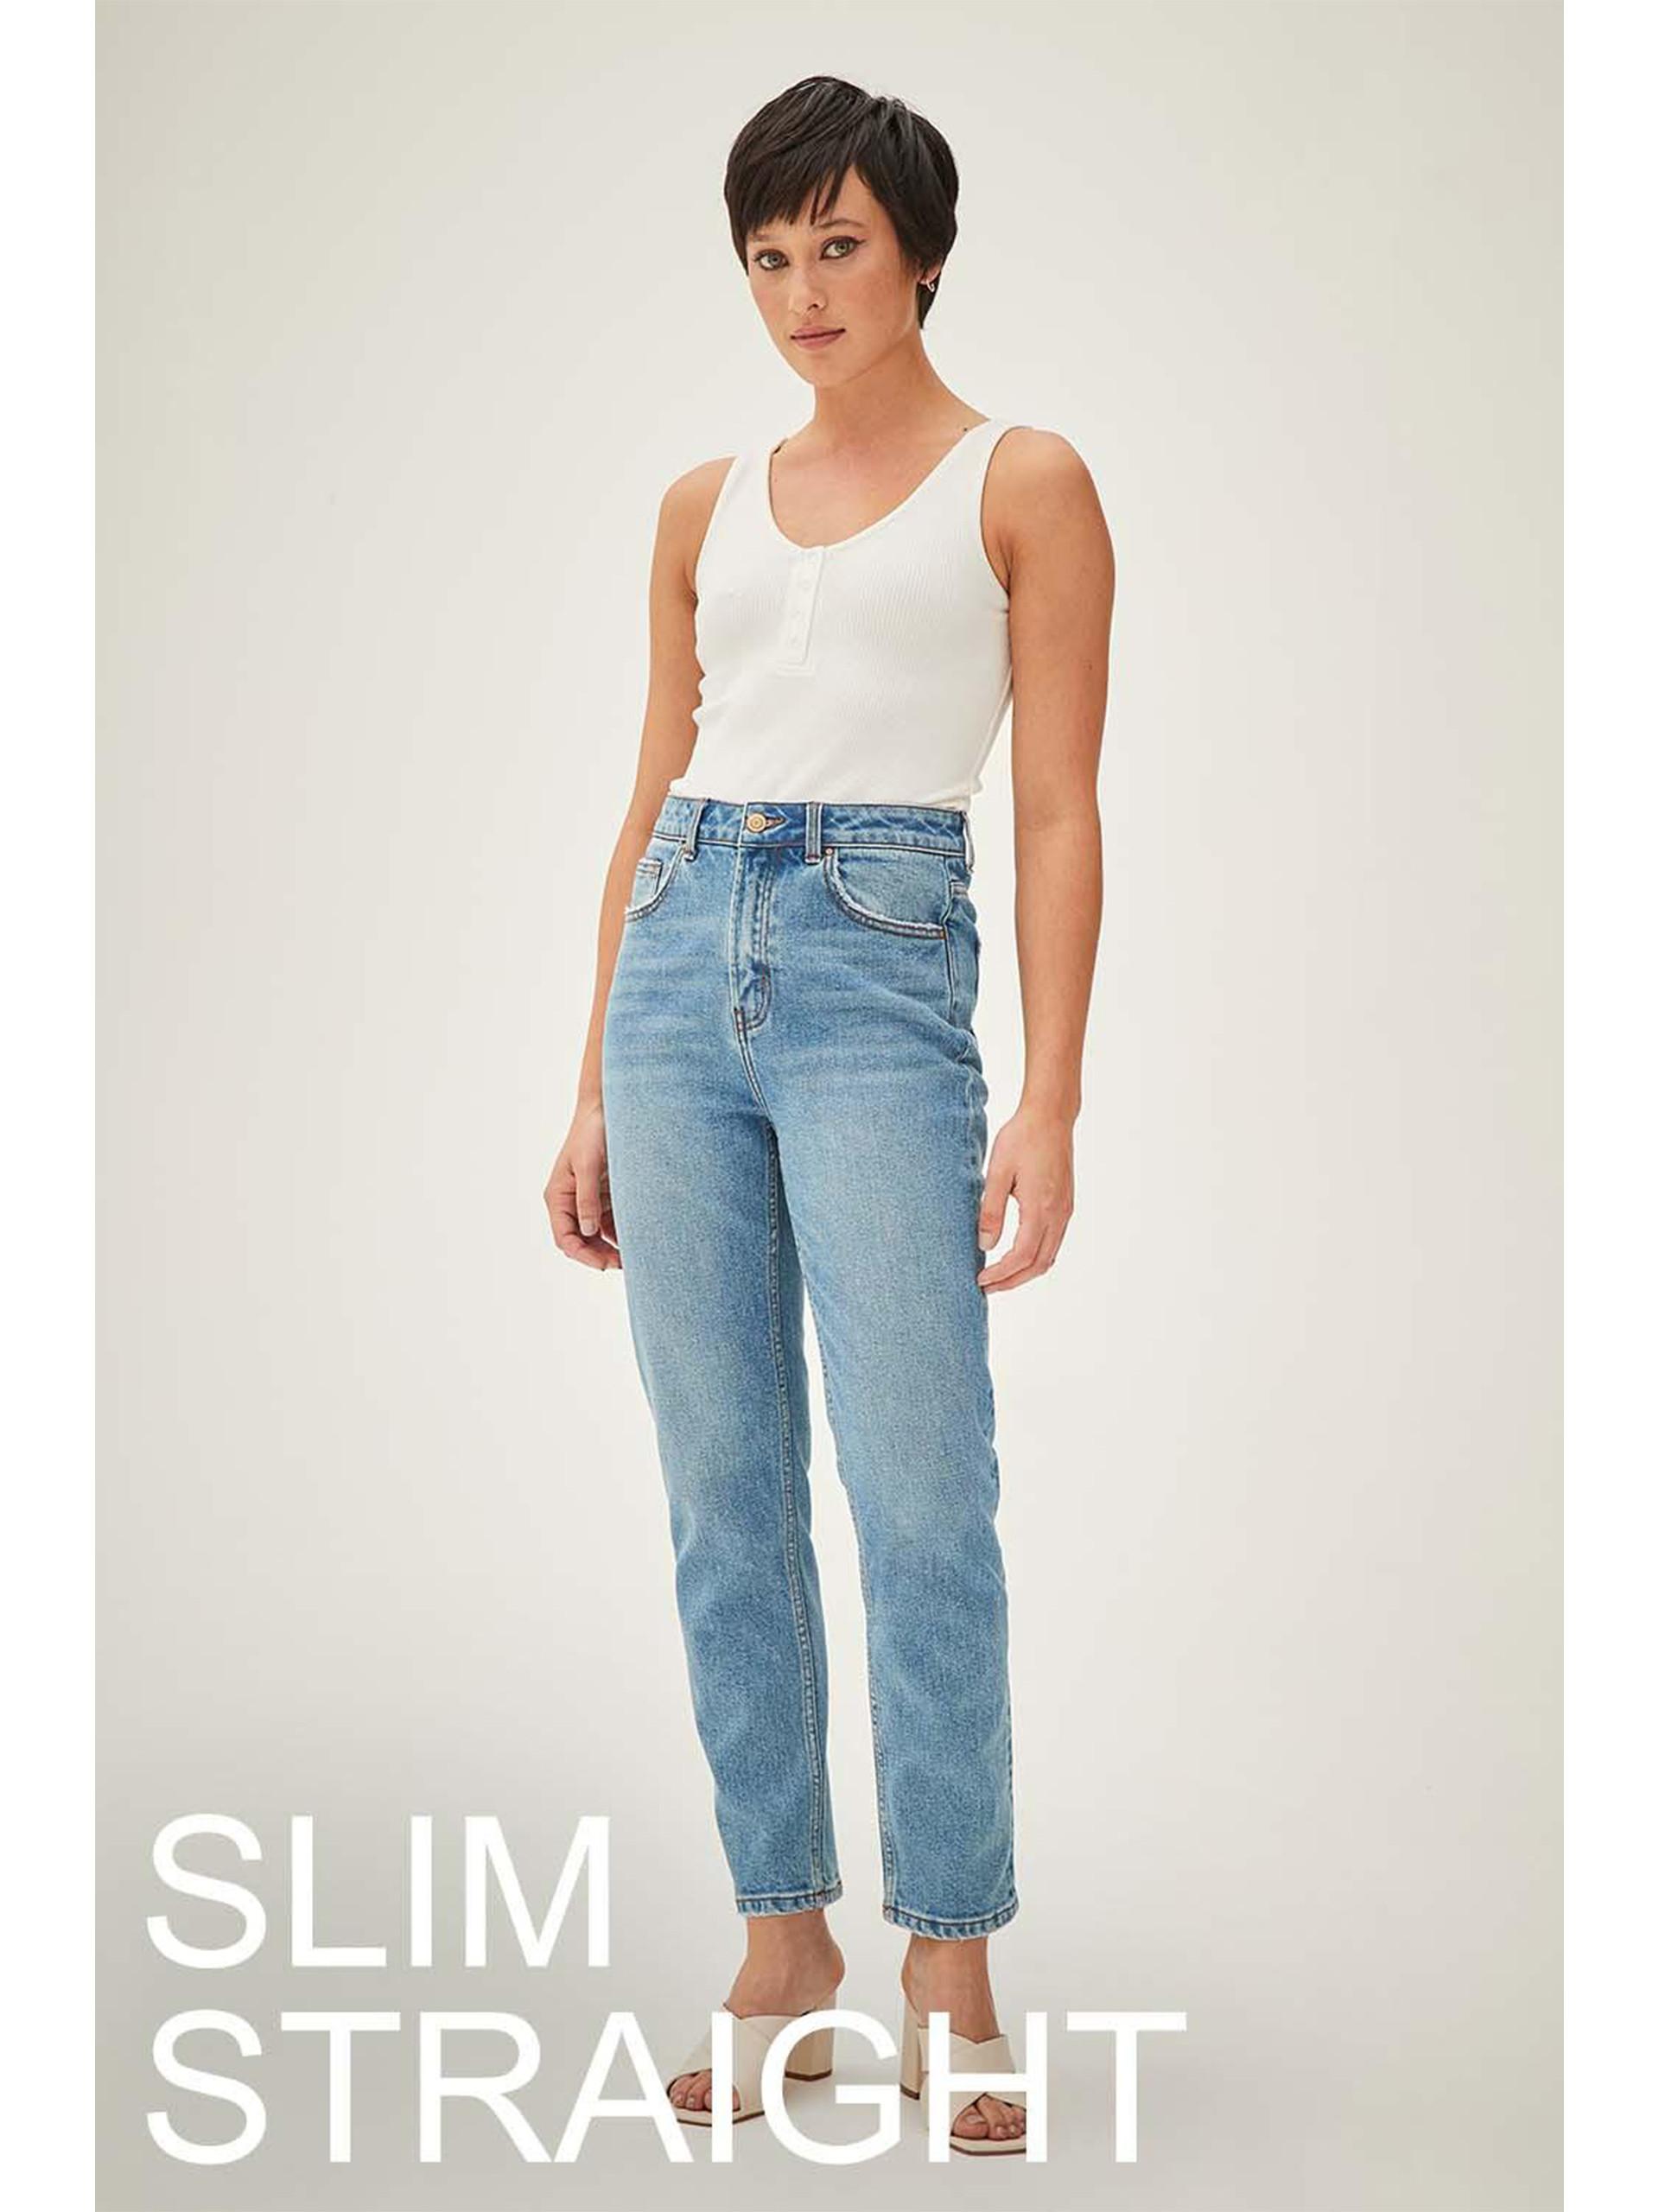 Model wears blue, slim straight jeans